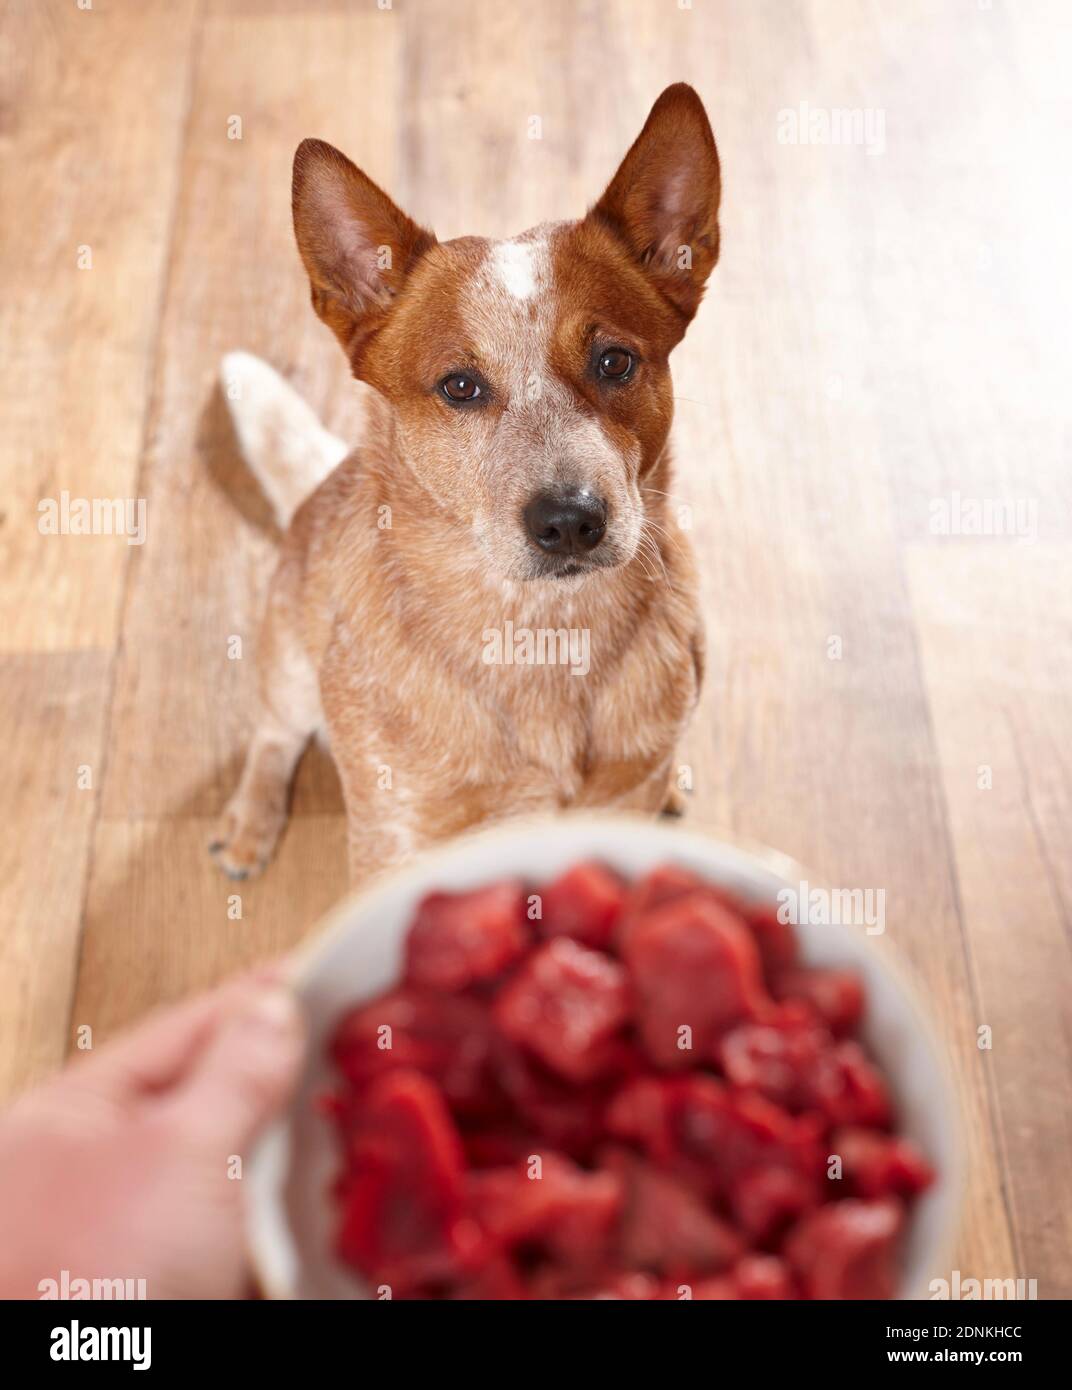 Chien de bétail australien. Un chien assis attend sa nourriture, un bol de viande fraîche crue. Allemagne Banque D'Images